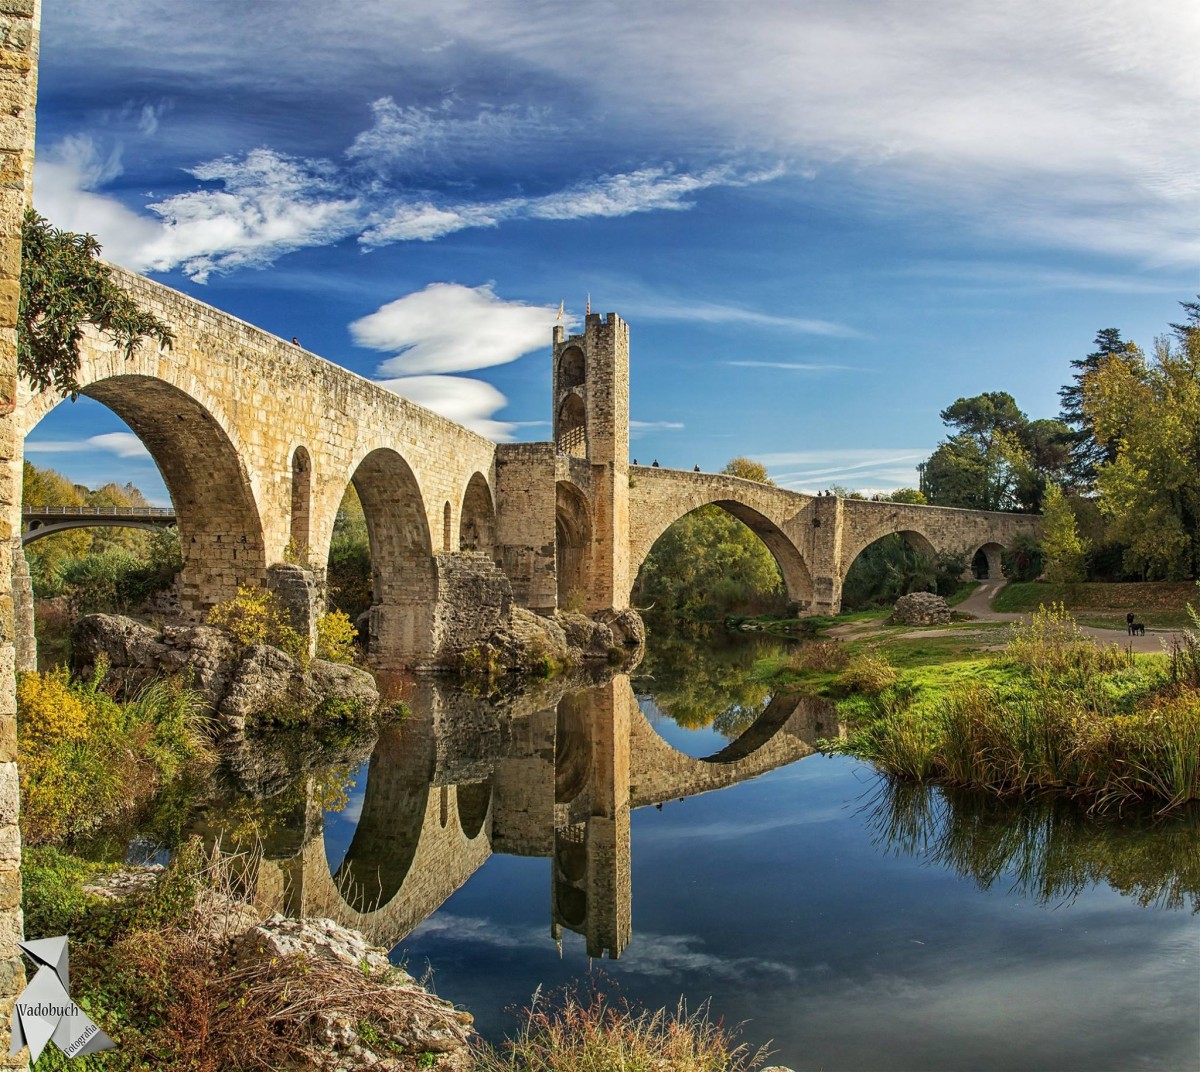 El pont medieval de Besalú.